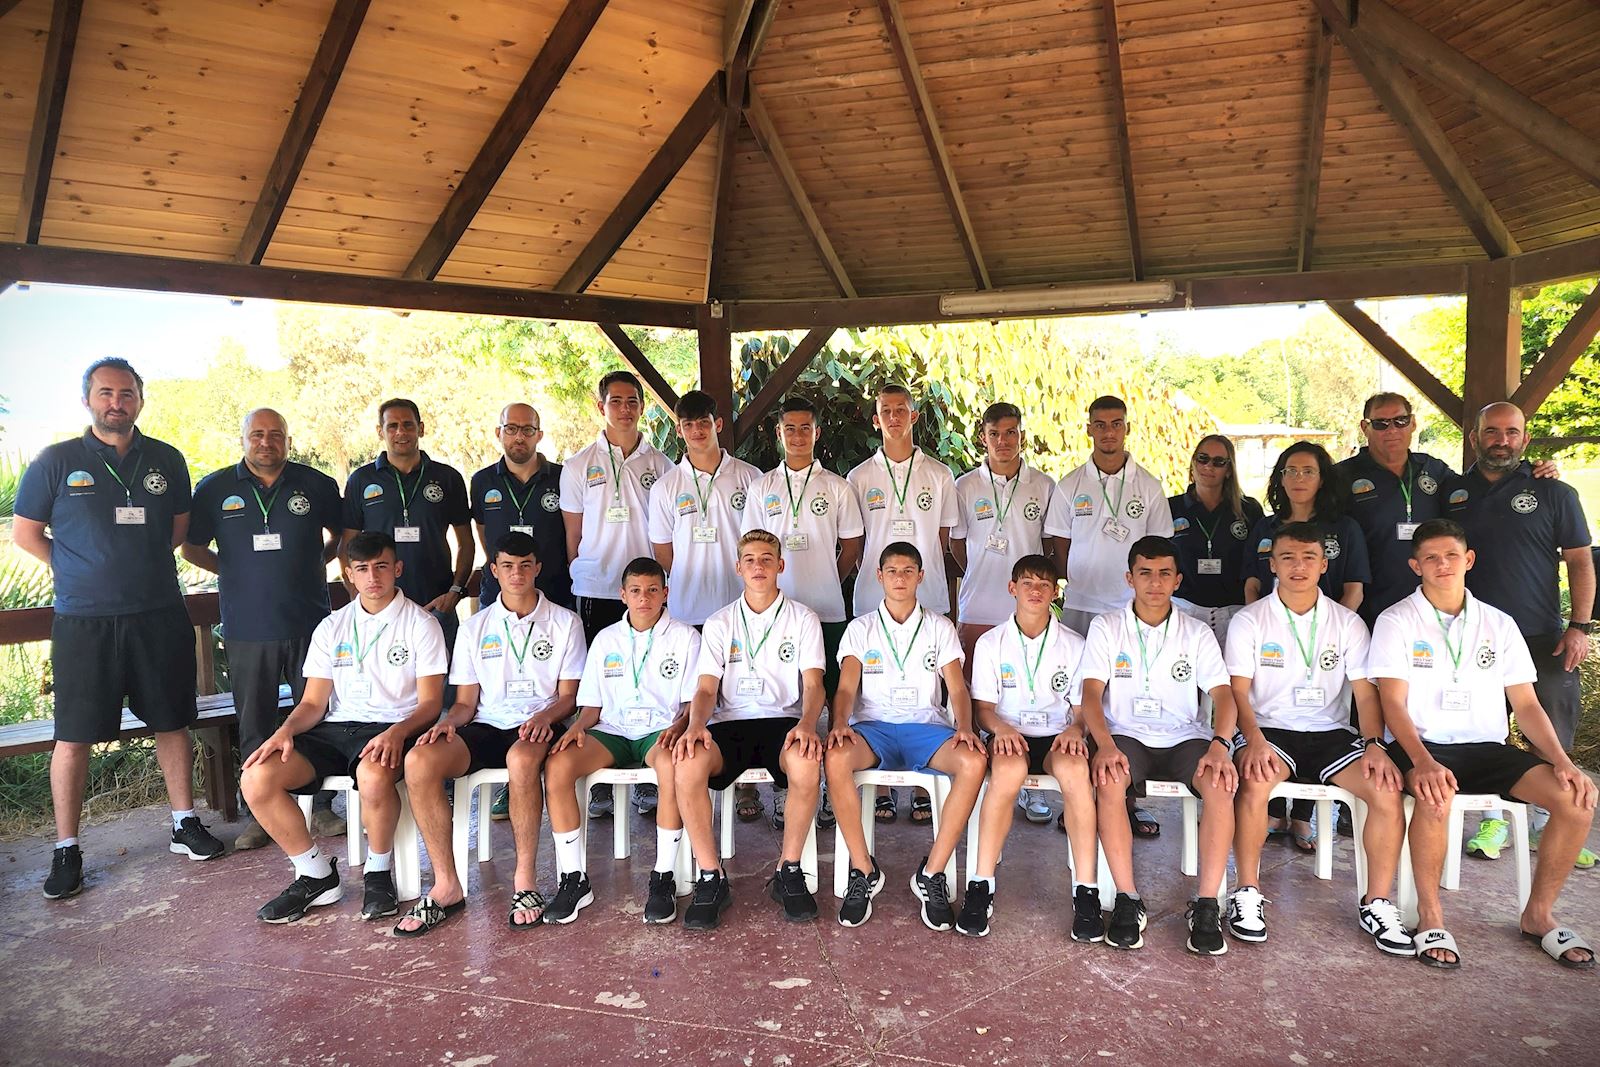 שחקני הנערים במחנה "דובדבן" – תוכנית ערכים ומנהיגות נוער בספורט